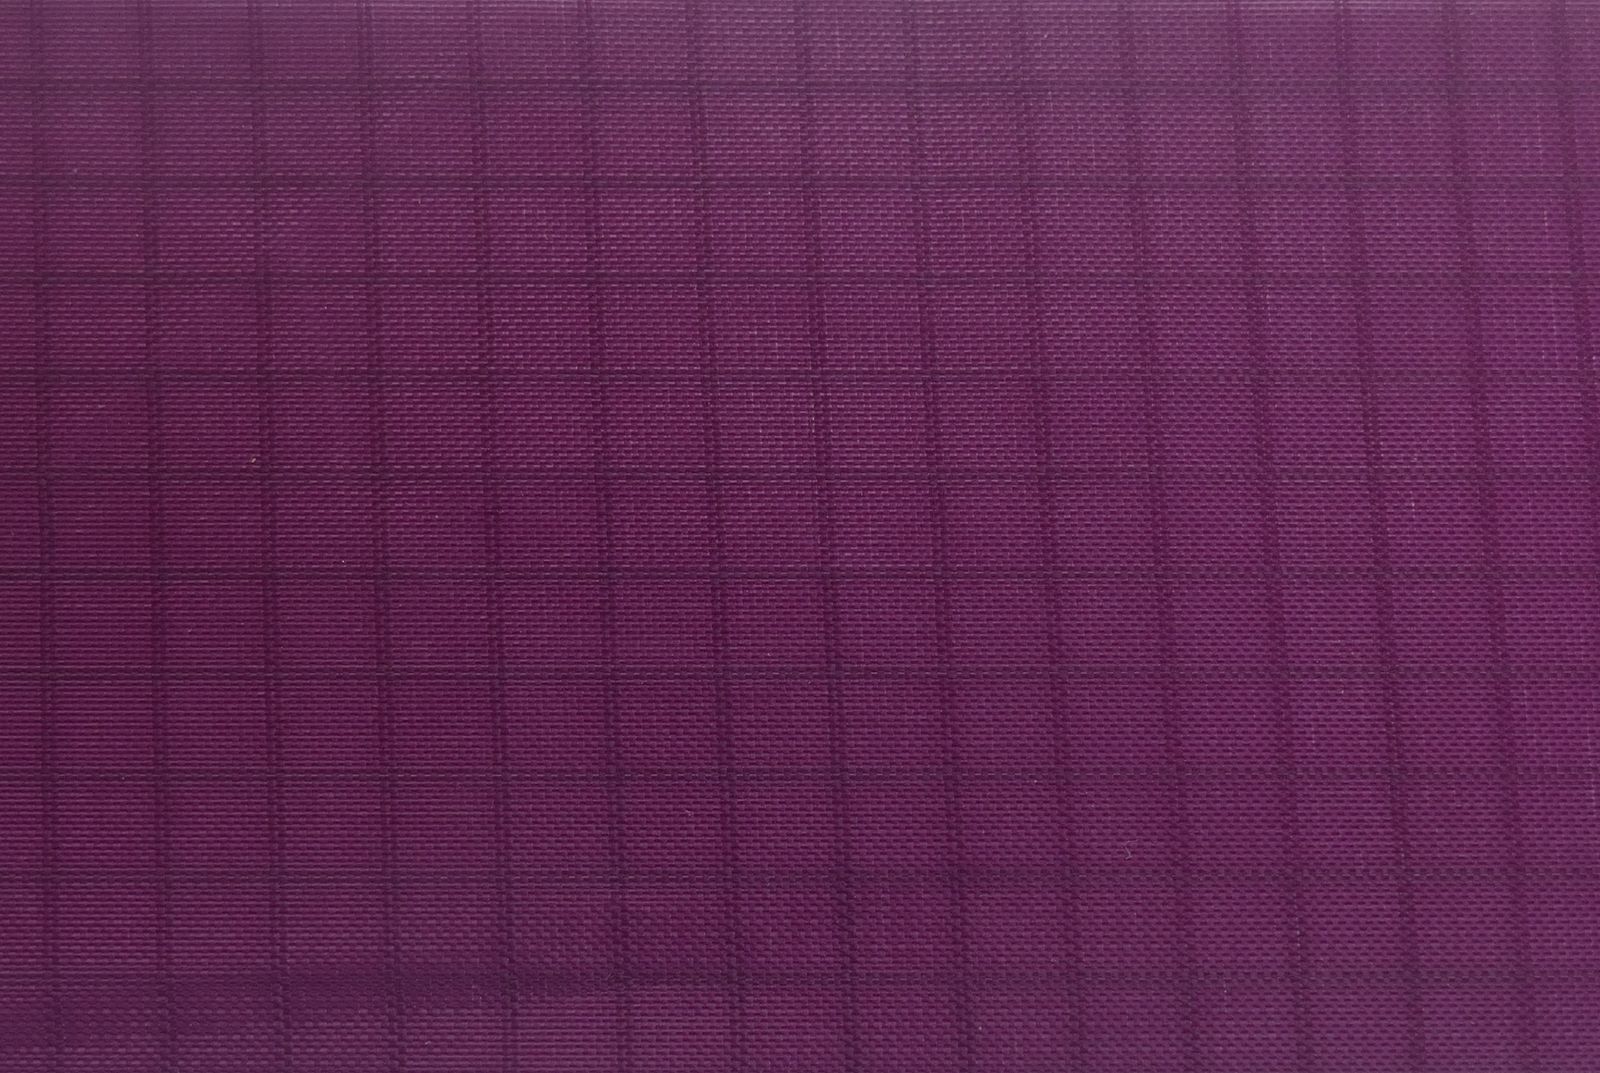 5 Meter - Elltex Spinnakertuch-Nylon reißfestes Gewebetuch mit Ripstop 150 cm breit dark purple PU-beschichtet für Drachen- und Modellbau